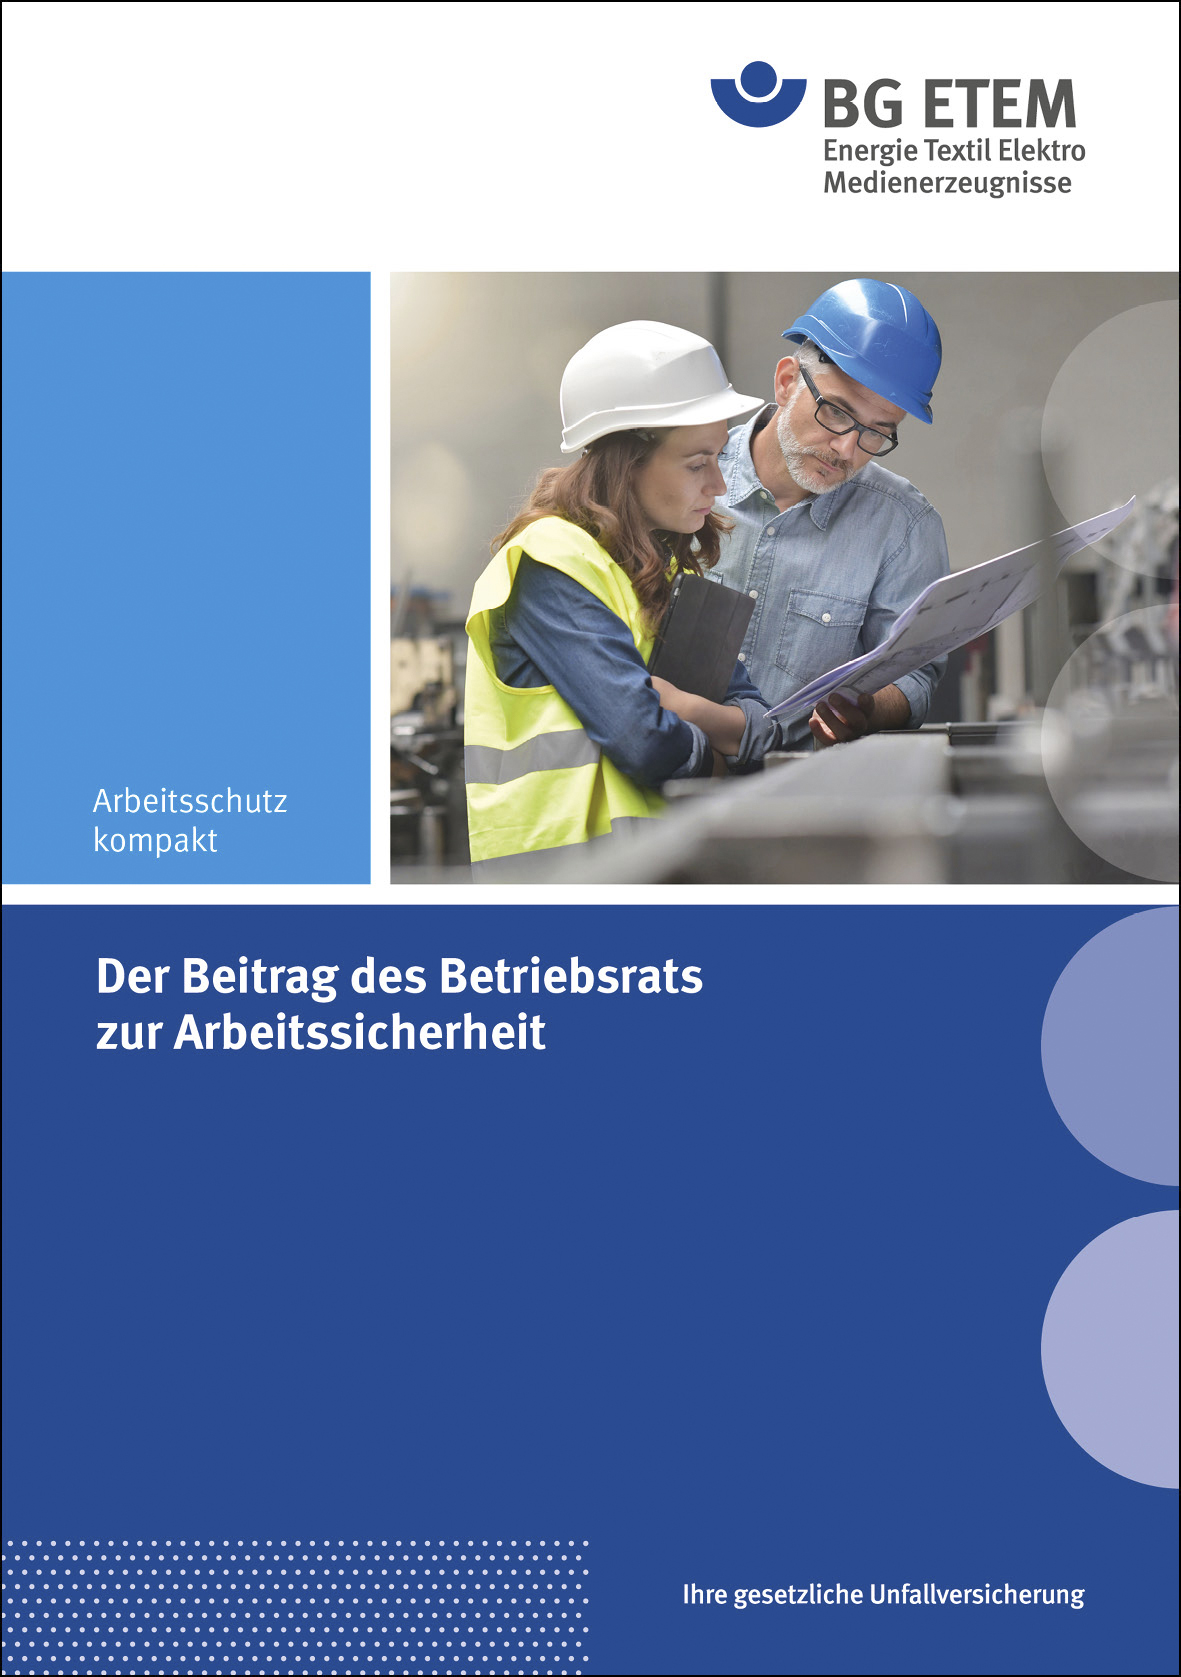 Broschüre "Der Beitrag des Betriebsrats zur Arbeitssicherheit"